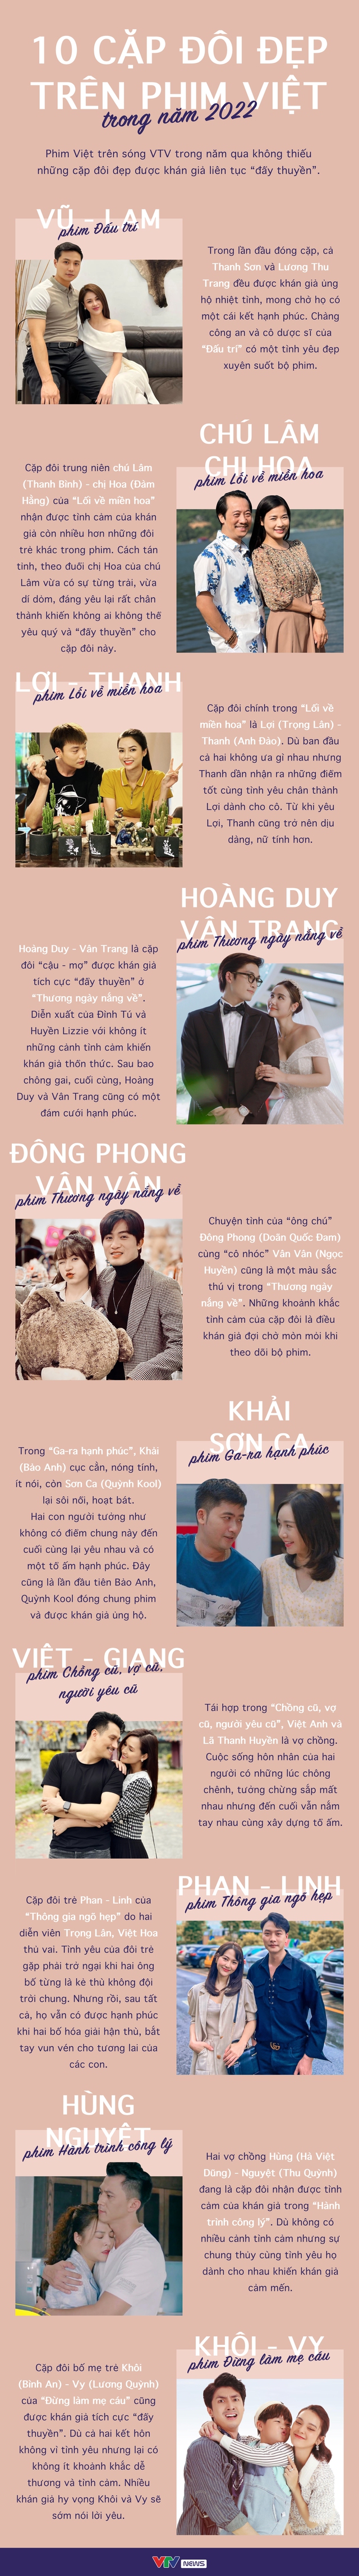 Các cặp đôi đẹp trên phim Việt là nguồn cảm hứng không đối thủ cho những ai yêu thích tình cảm và giải trí. Để tìm hiểu thêm về các diễn viên tài năng và những vai diễn đáng nhớ, hãy xem những bức ảnh của họ trên phim Việt.